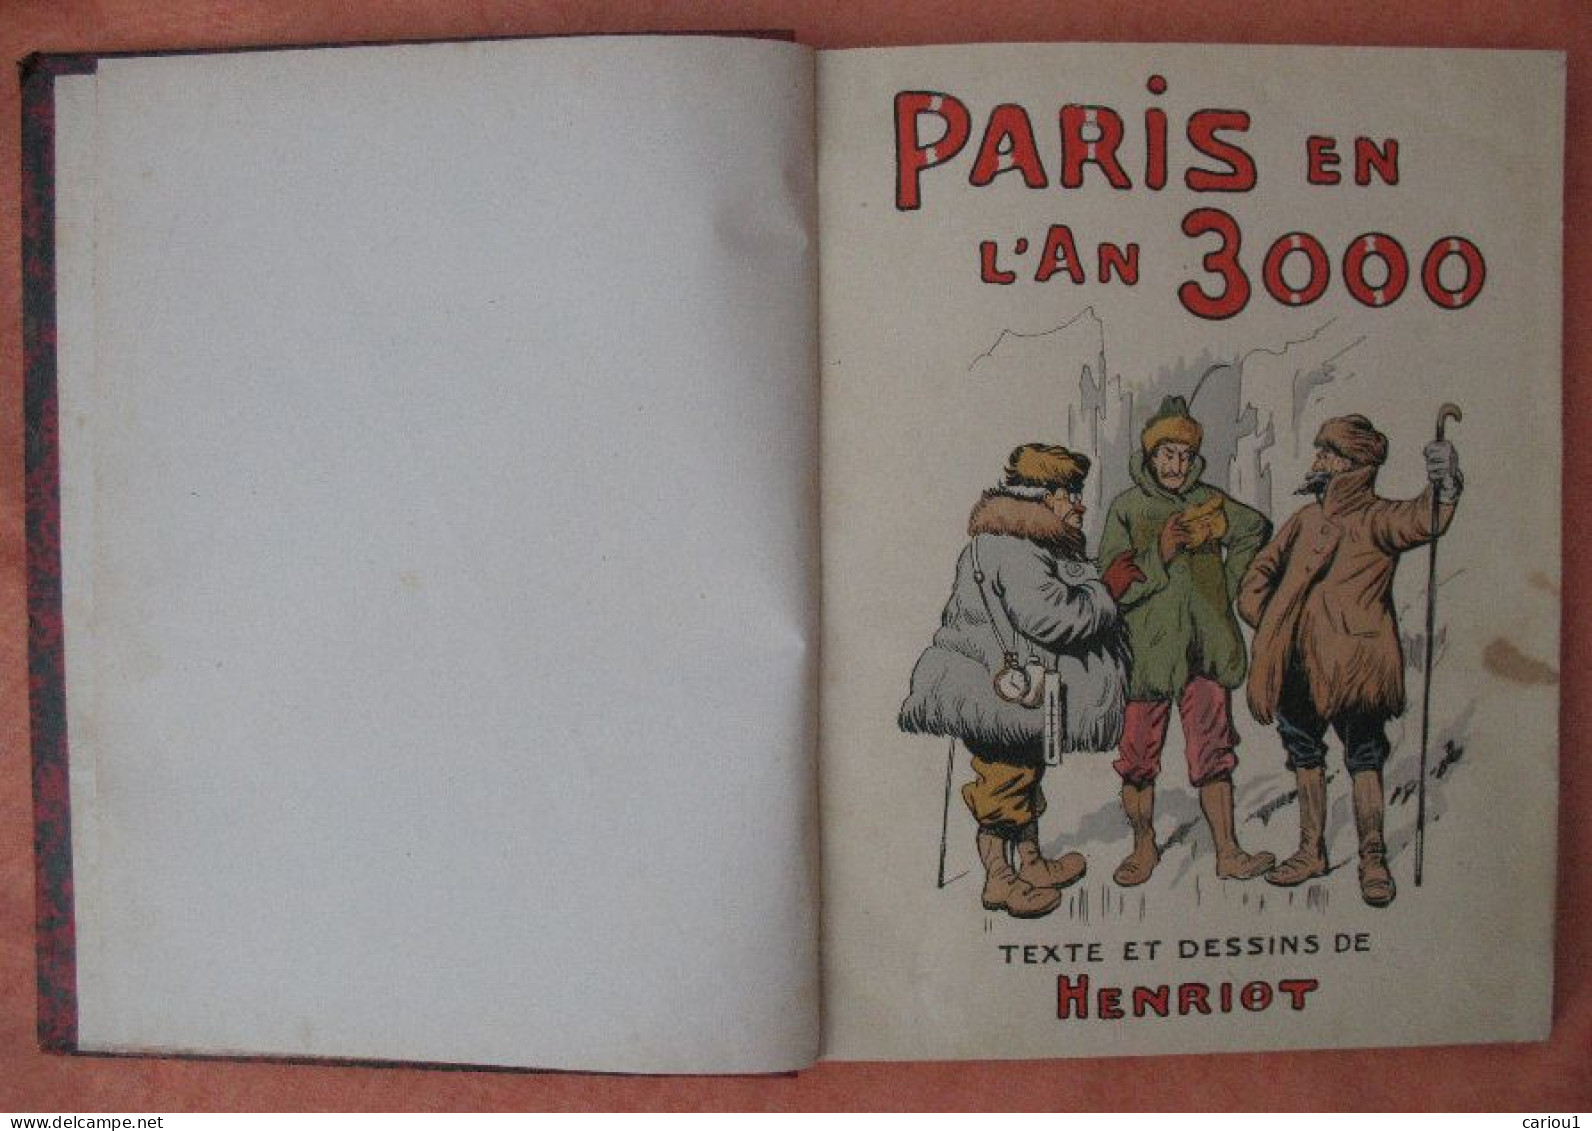 C1 HENRIOT - PARIS EN L AN 3000 Relie ILLUSTRE Grand Format PORT INCLUS France - Before 1950